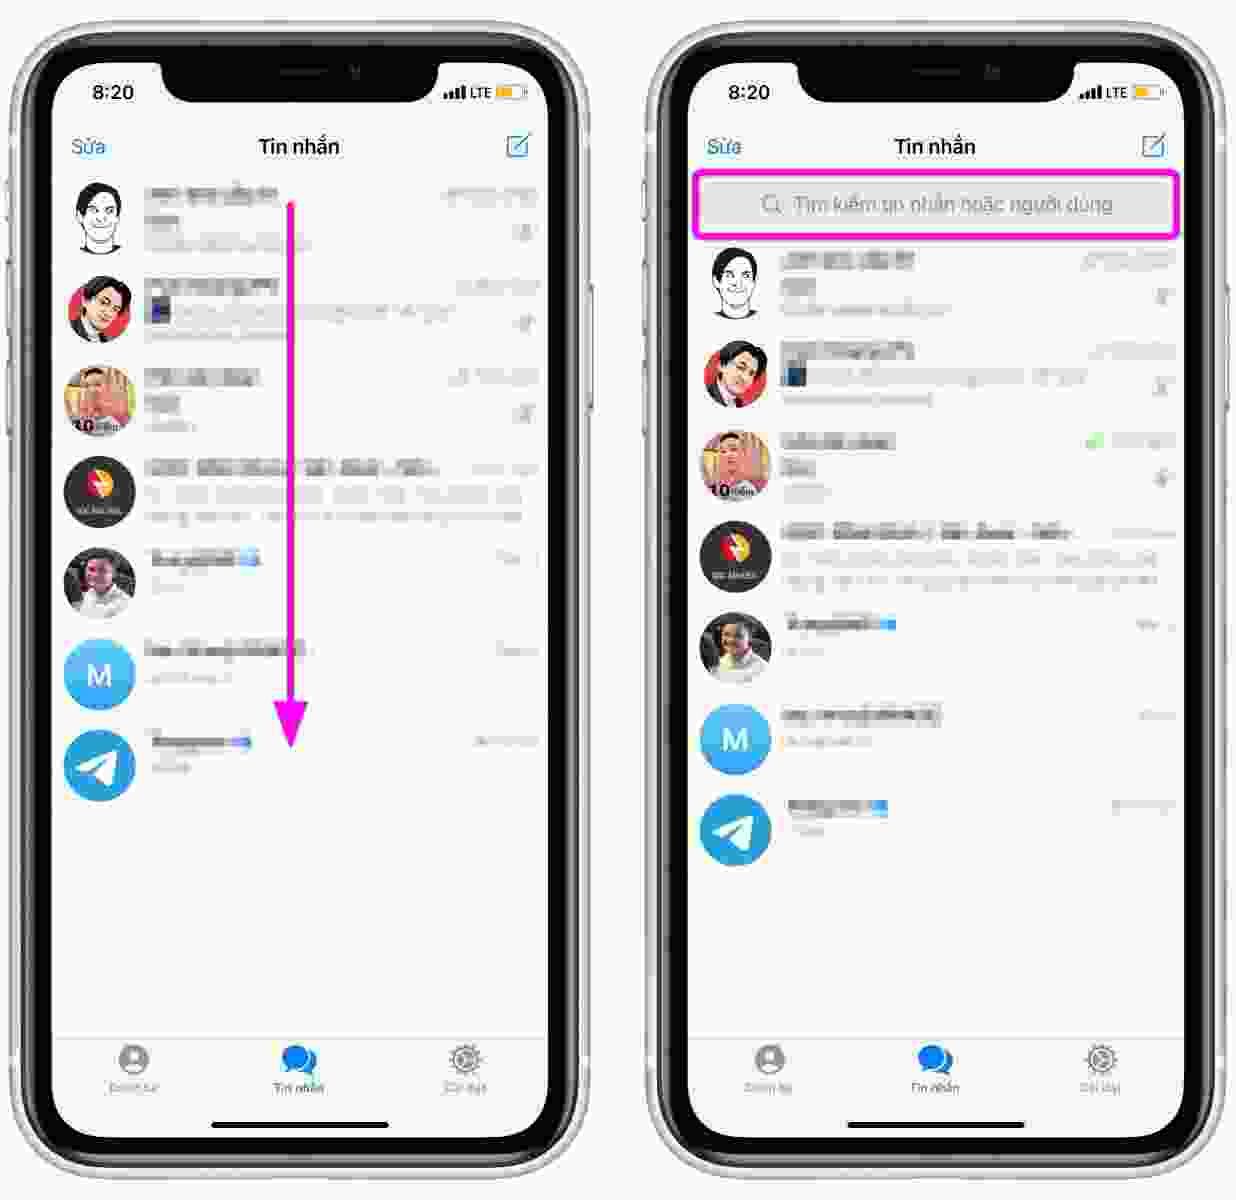 Telegram đã trở thành ứng dụng tuyệt vời để liên lạc, chia sẻ tin tức và tài liệu với người thân, bạn bè hoặc đồng nghiệp. Khám phá thêm về tính năng và lợi ích của ứng dụng nhắn tin này bằng cách xem hình ảnh liên quan.